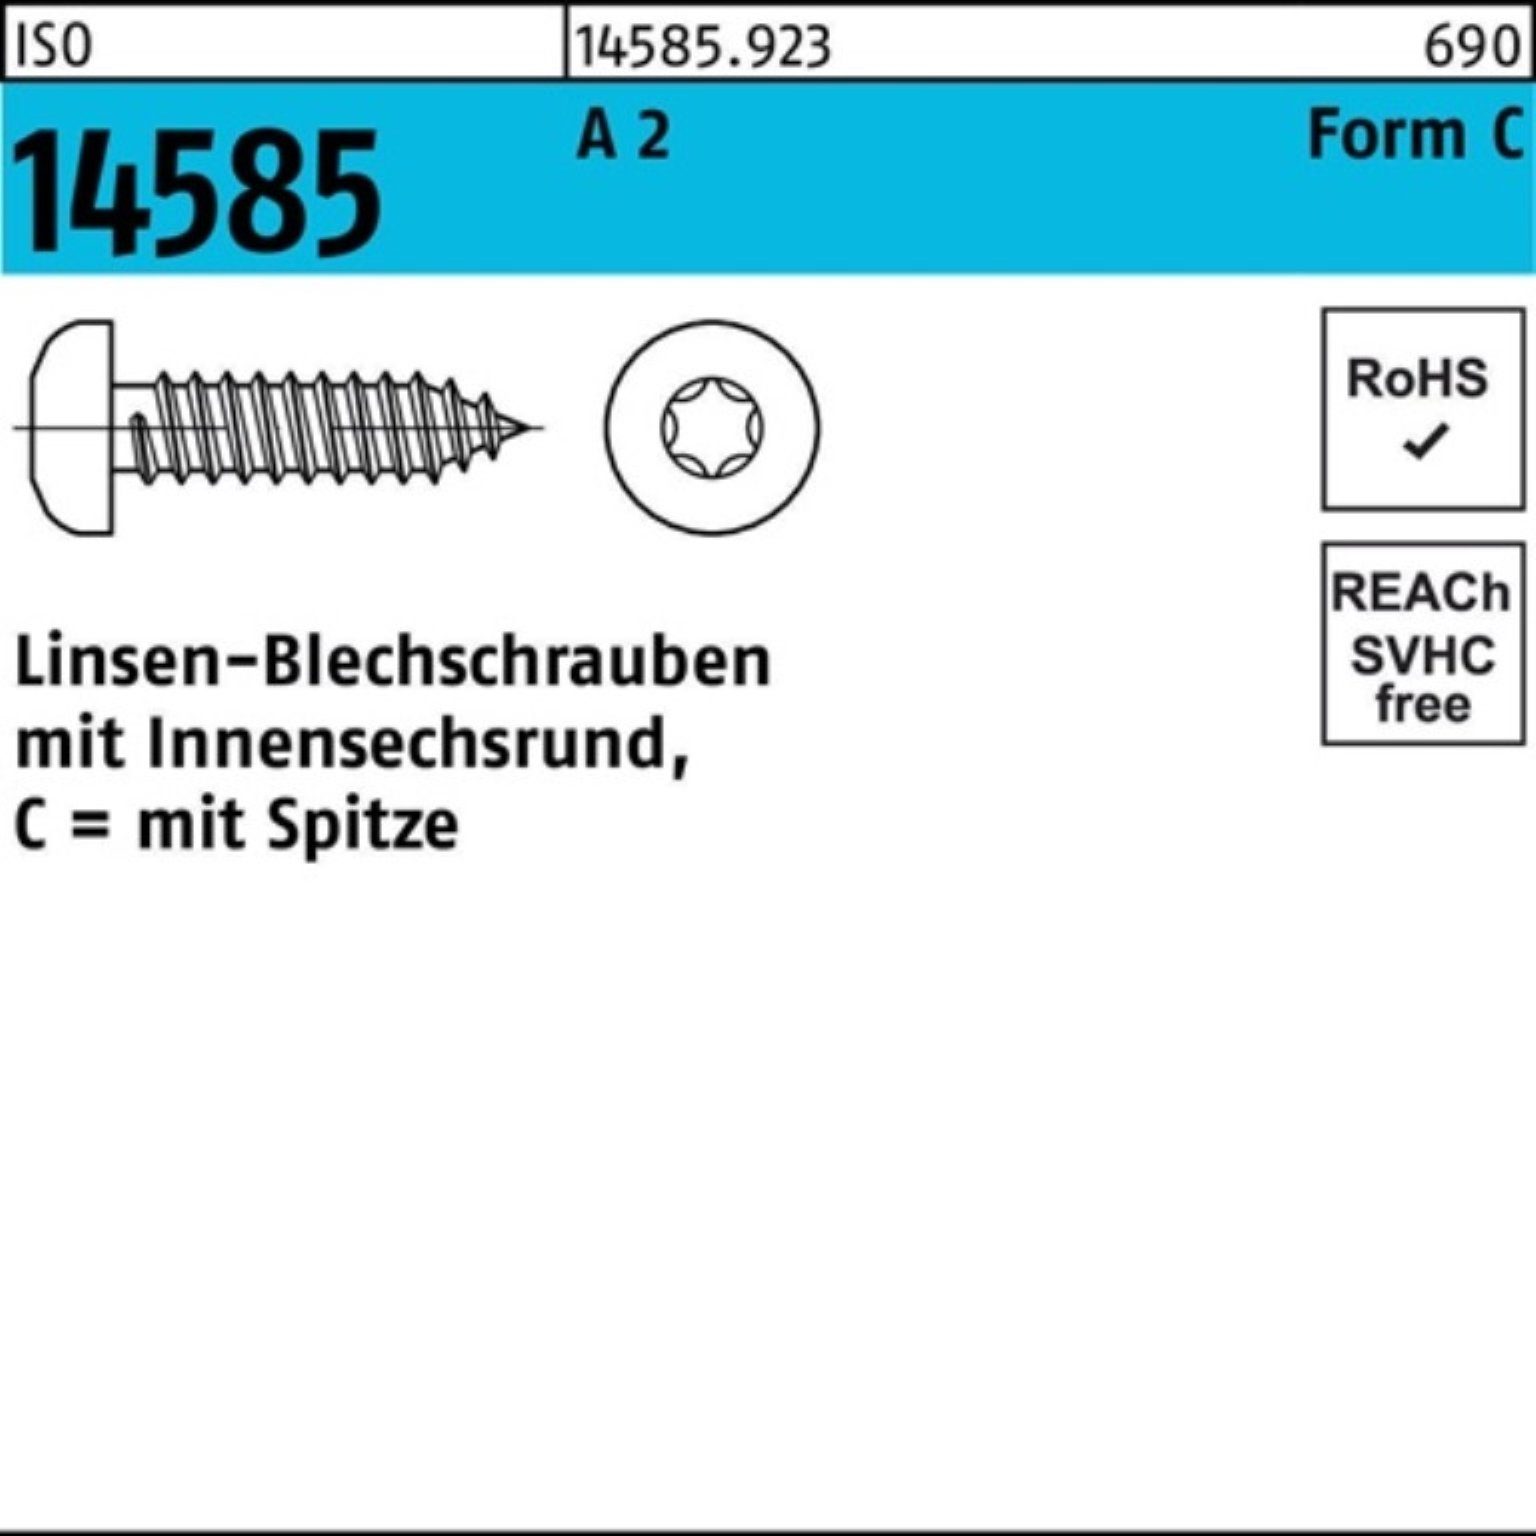 ISO 2 Pack 1000 2,9x Reyher 16 Blechschraube A Linsenblechschraube 1000er -C T10 ISR 14585